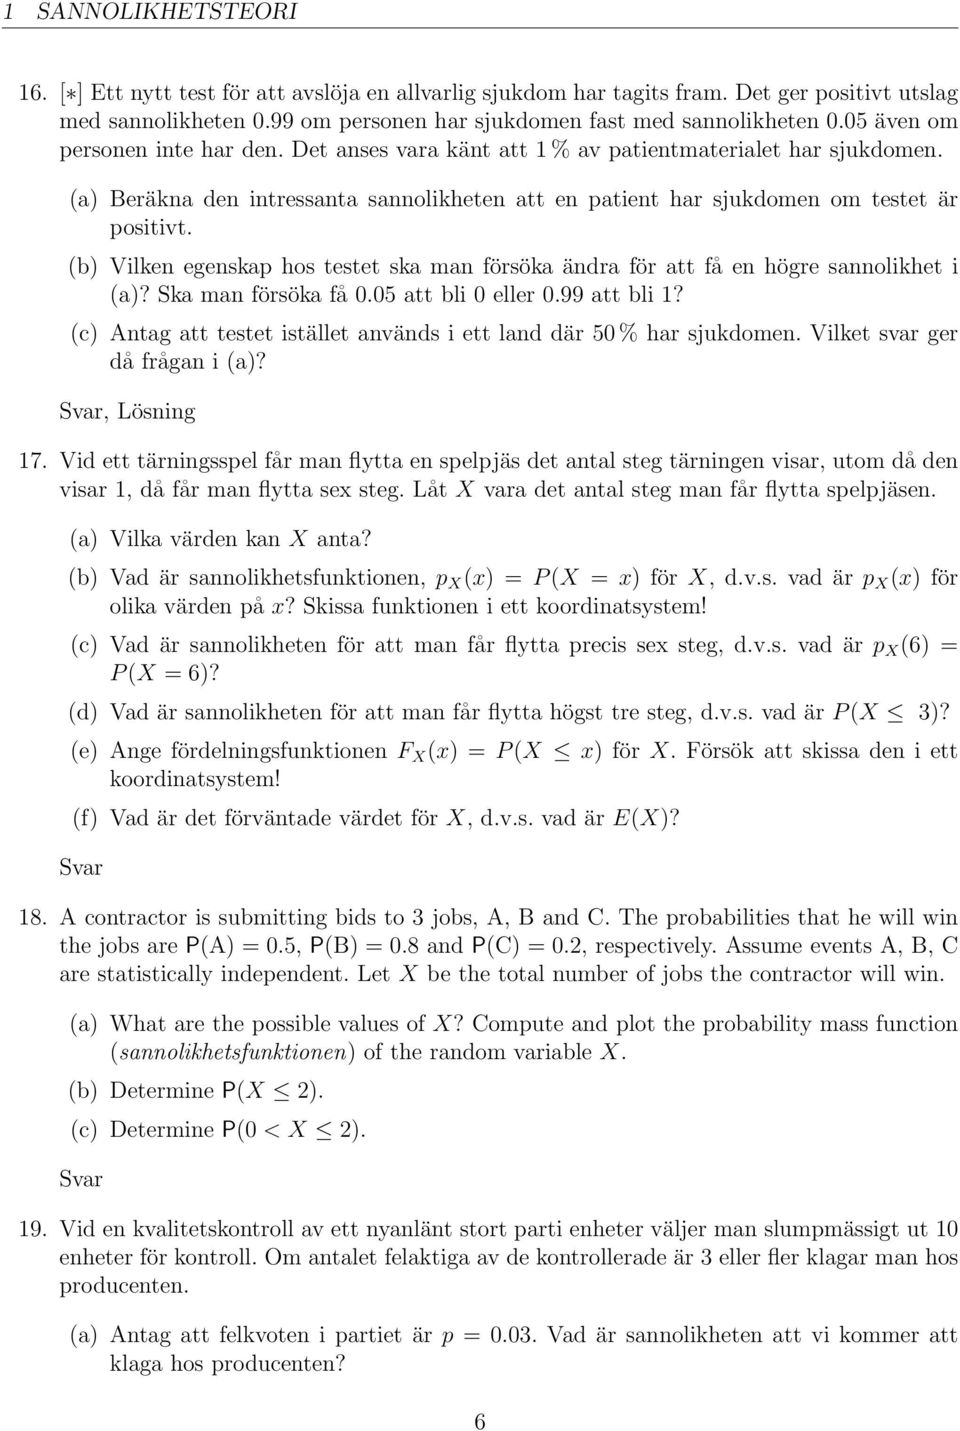 (b) Vilken egenskap hos testet ska man försöka ändra för att få en högre sannolikhet i (a)? Ska man försöka få 0.05 att bli 0 eller 0.99 att bli 1?